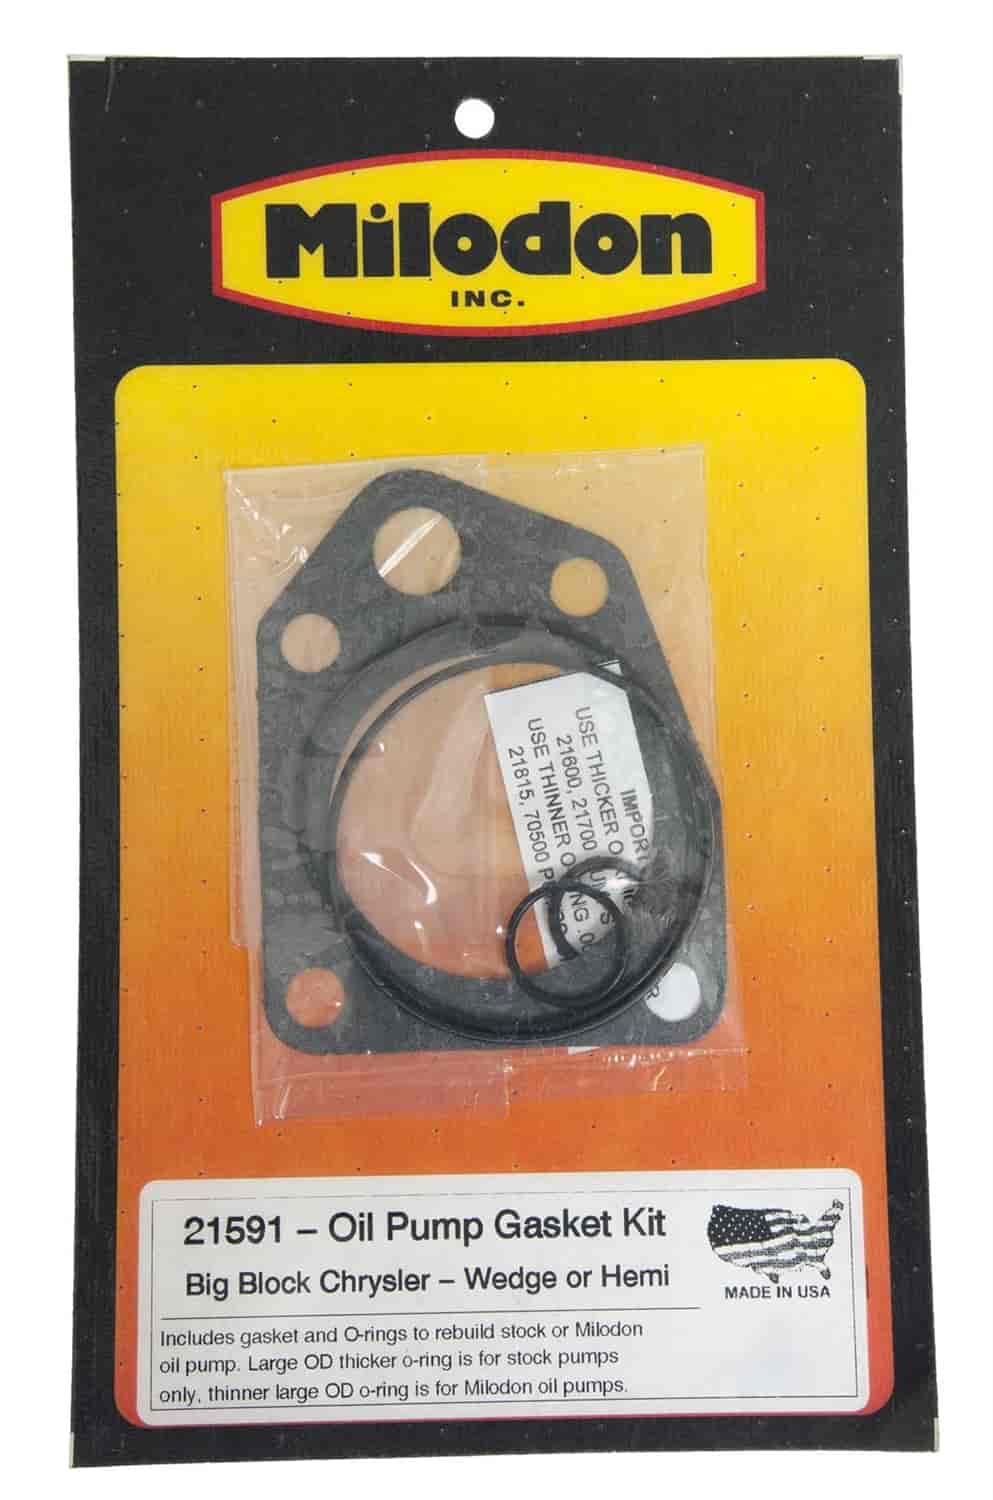 Oil Pump Gasket Kit